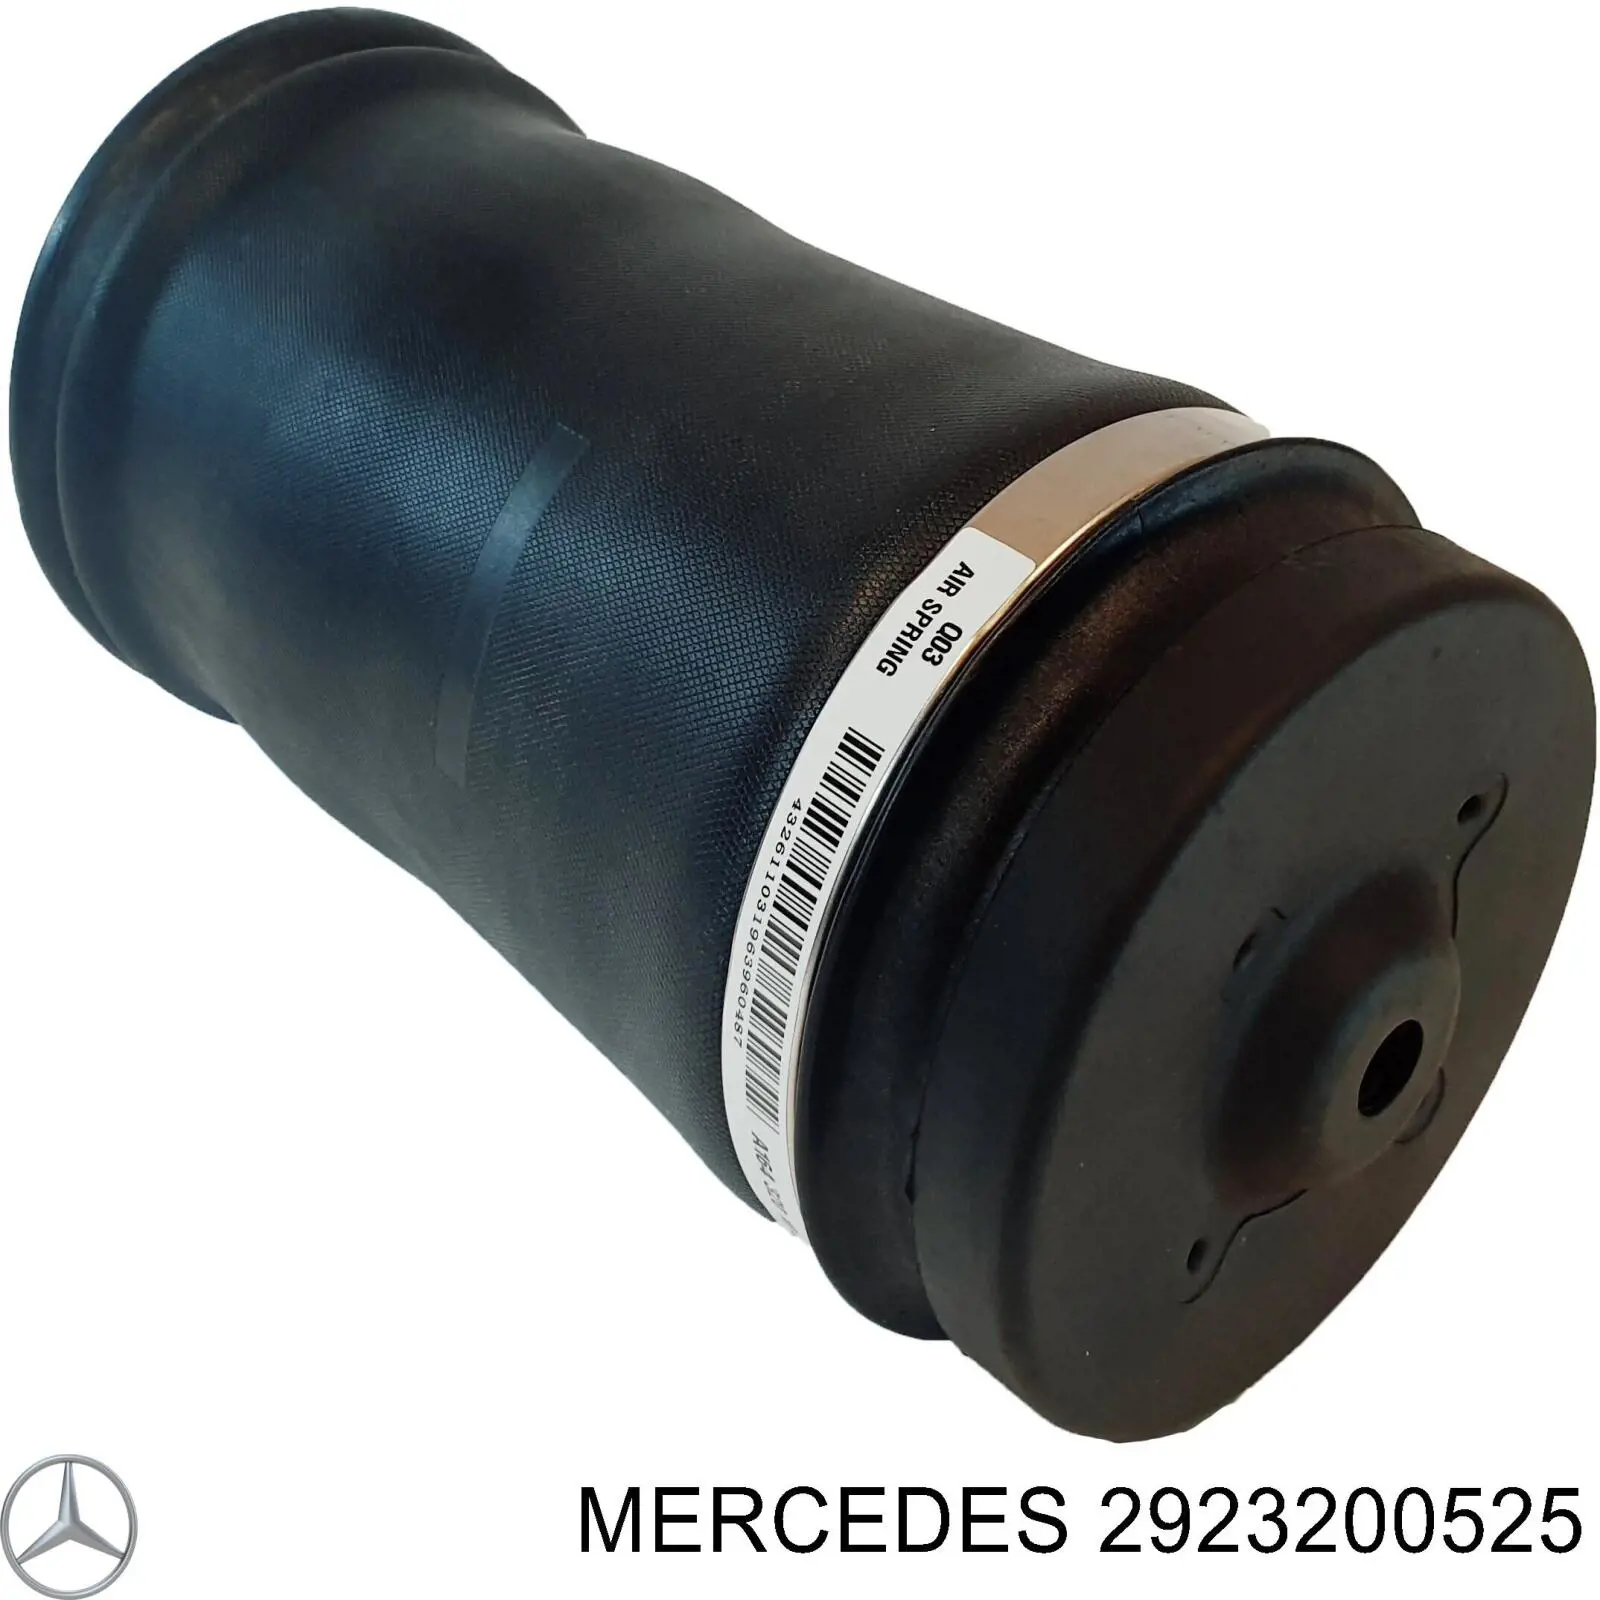 2923200525 Mercedes coxim pneumático (suspensão de lâminas pneumática do eixo traseiro)